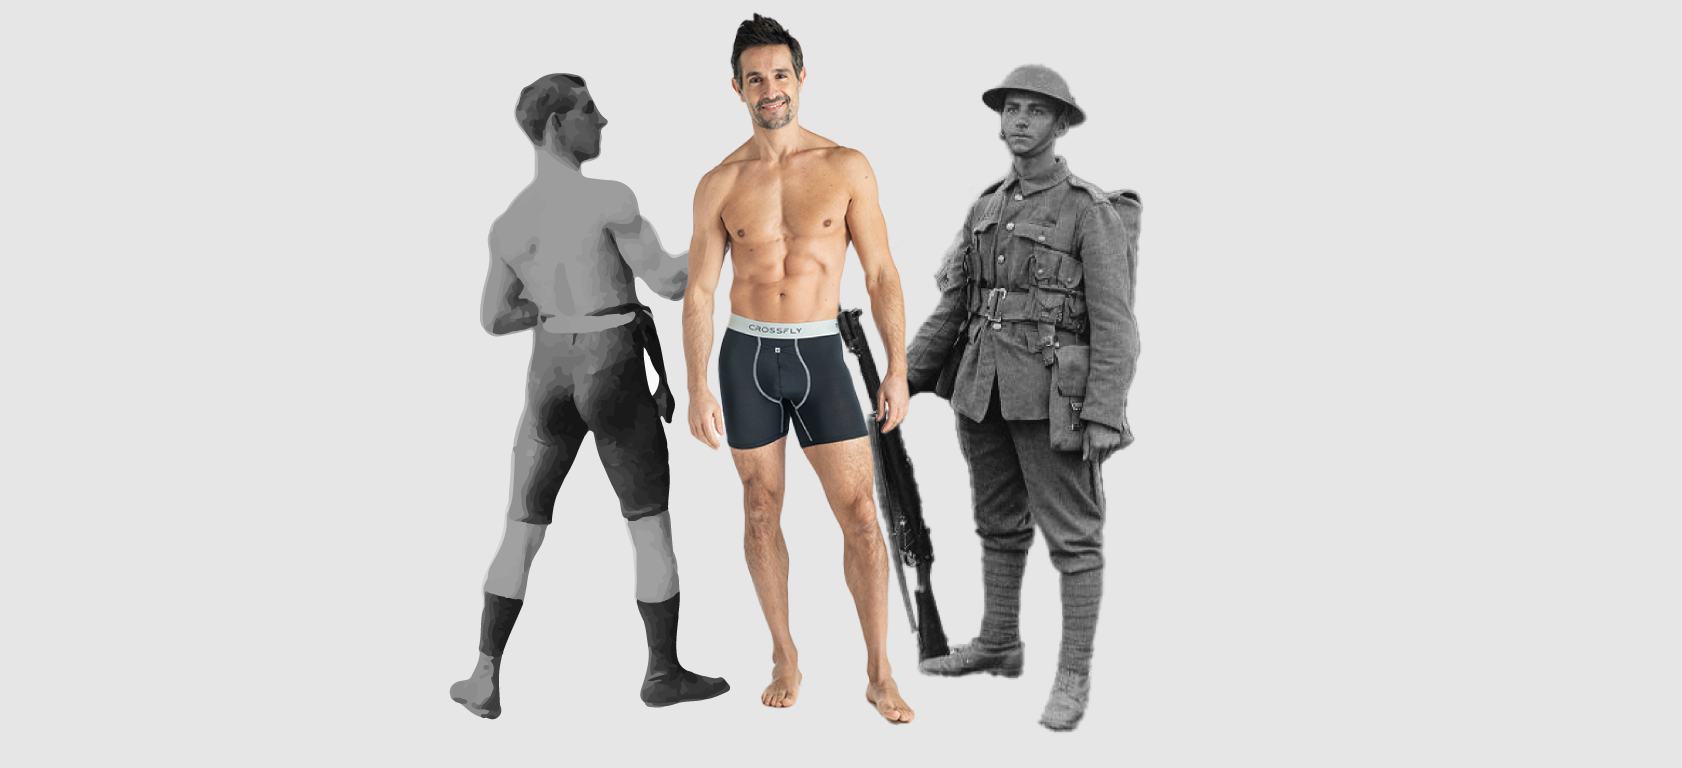 A Brief History of Men’s Underwear